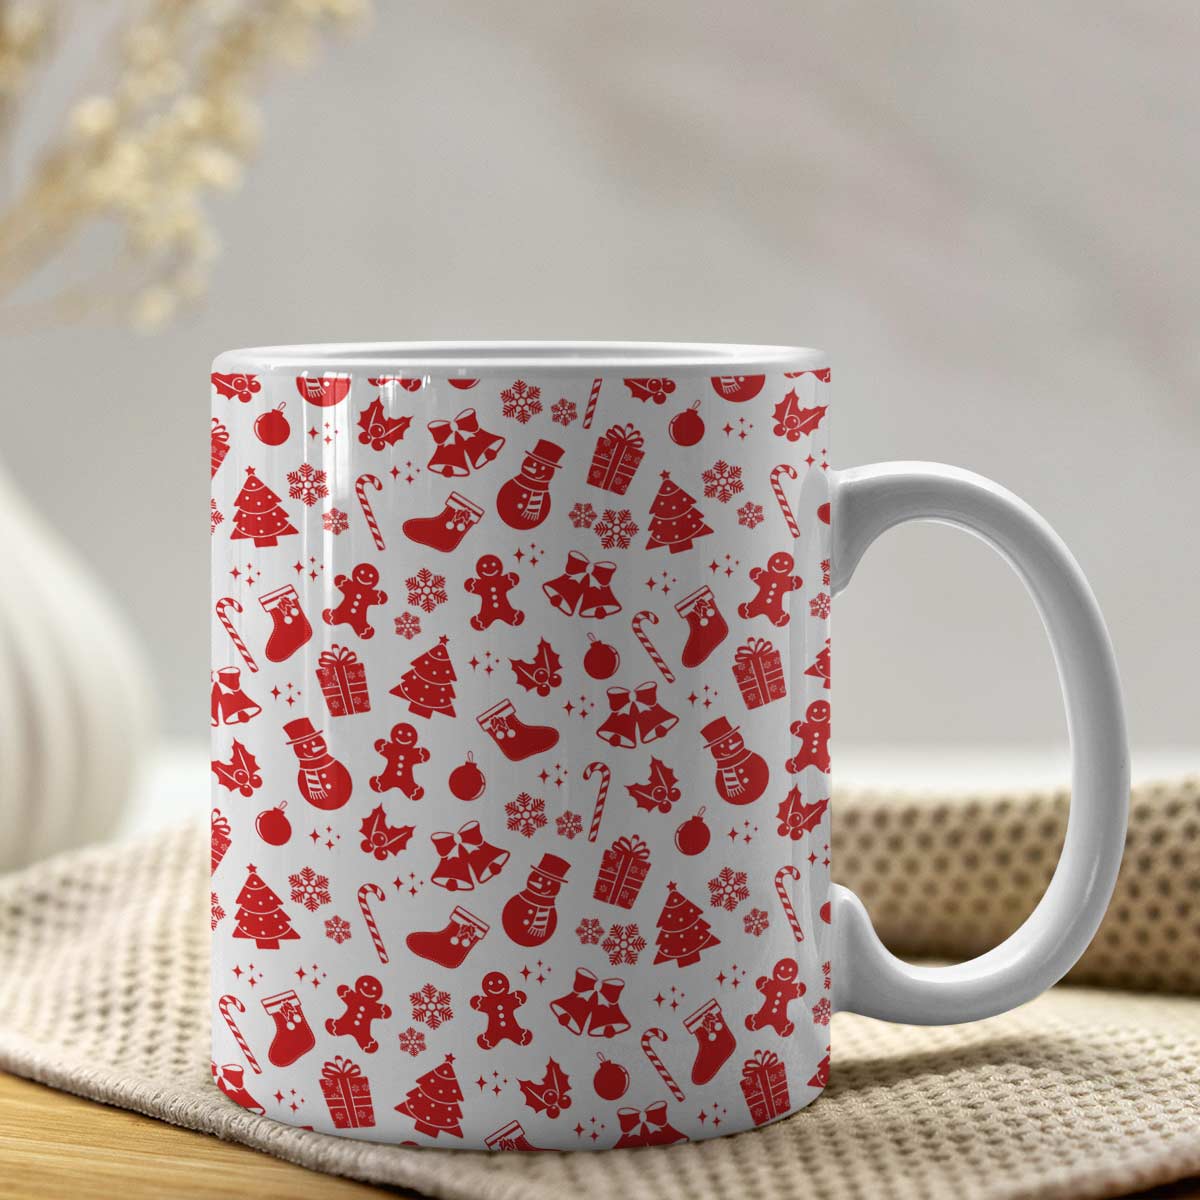 All Things Christmas Ceramic Mug